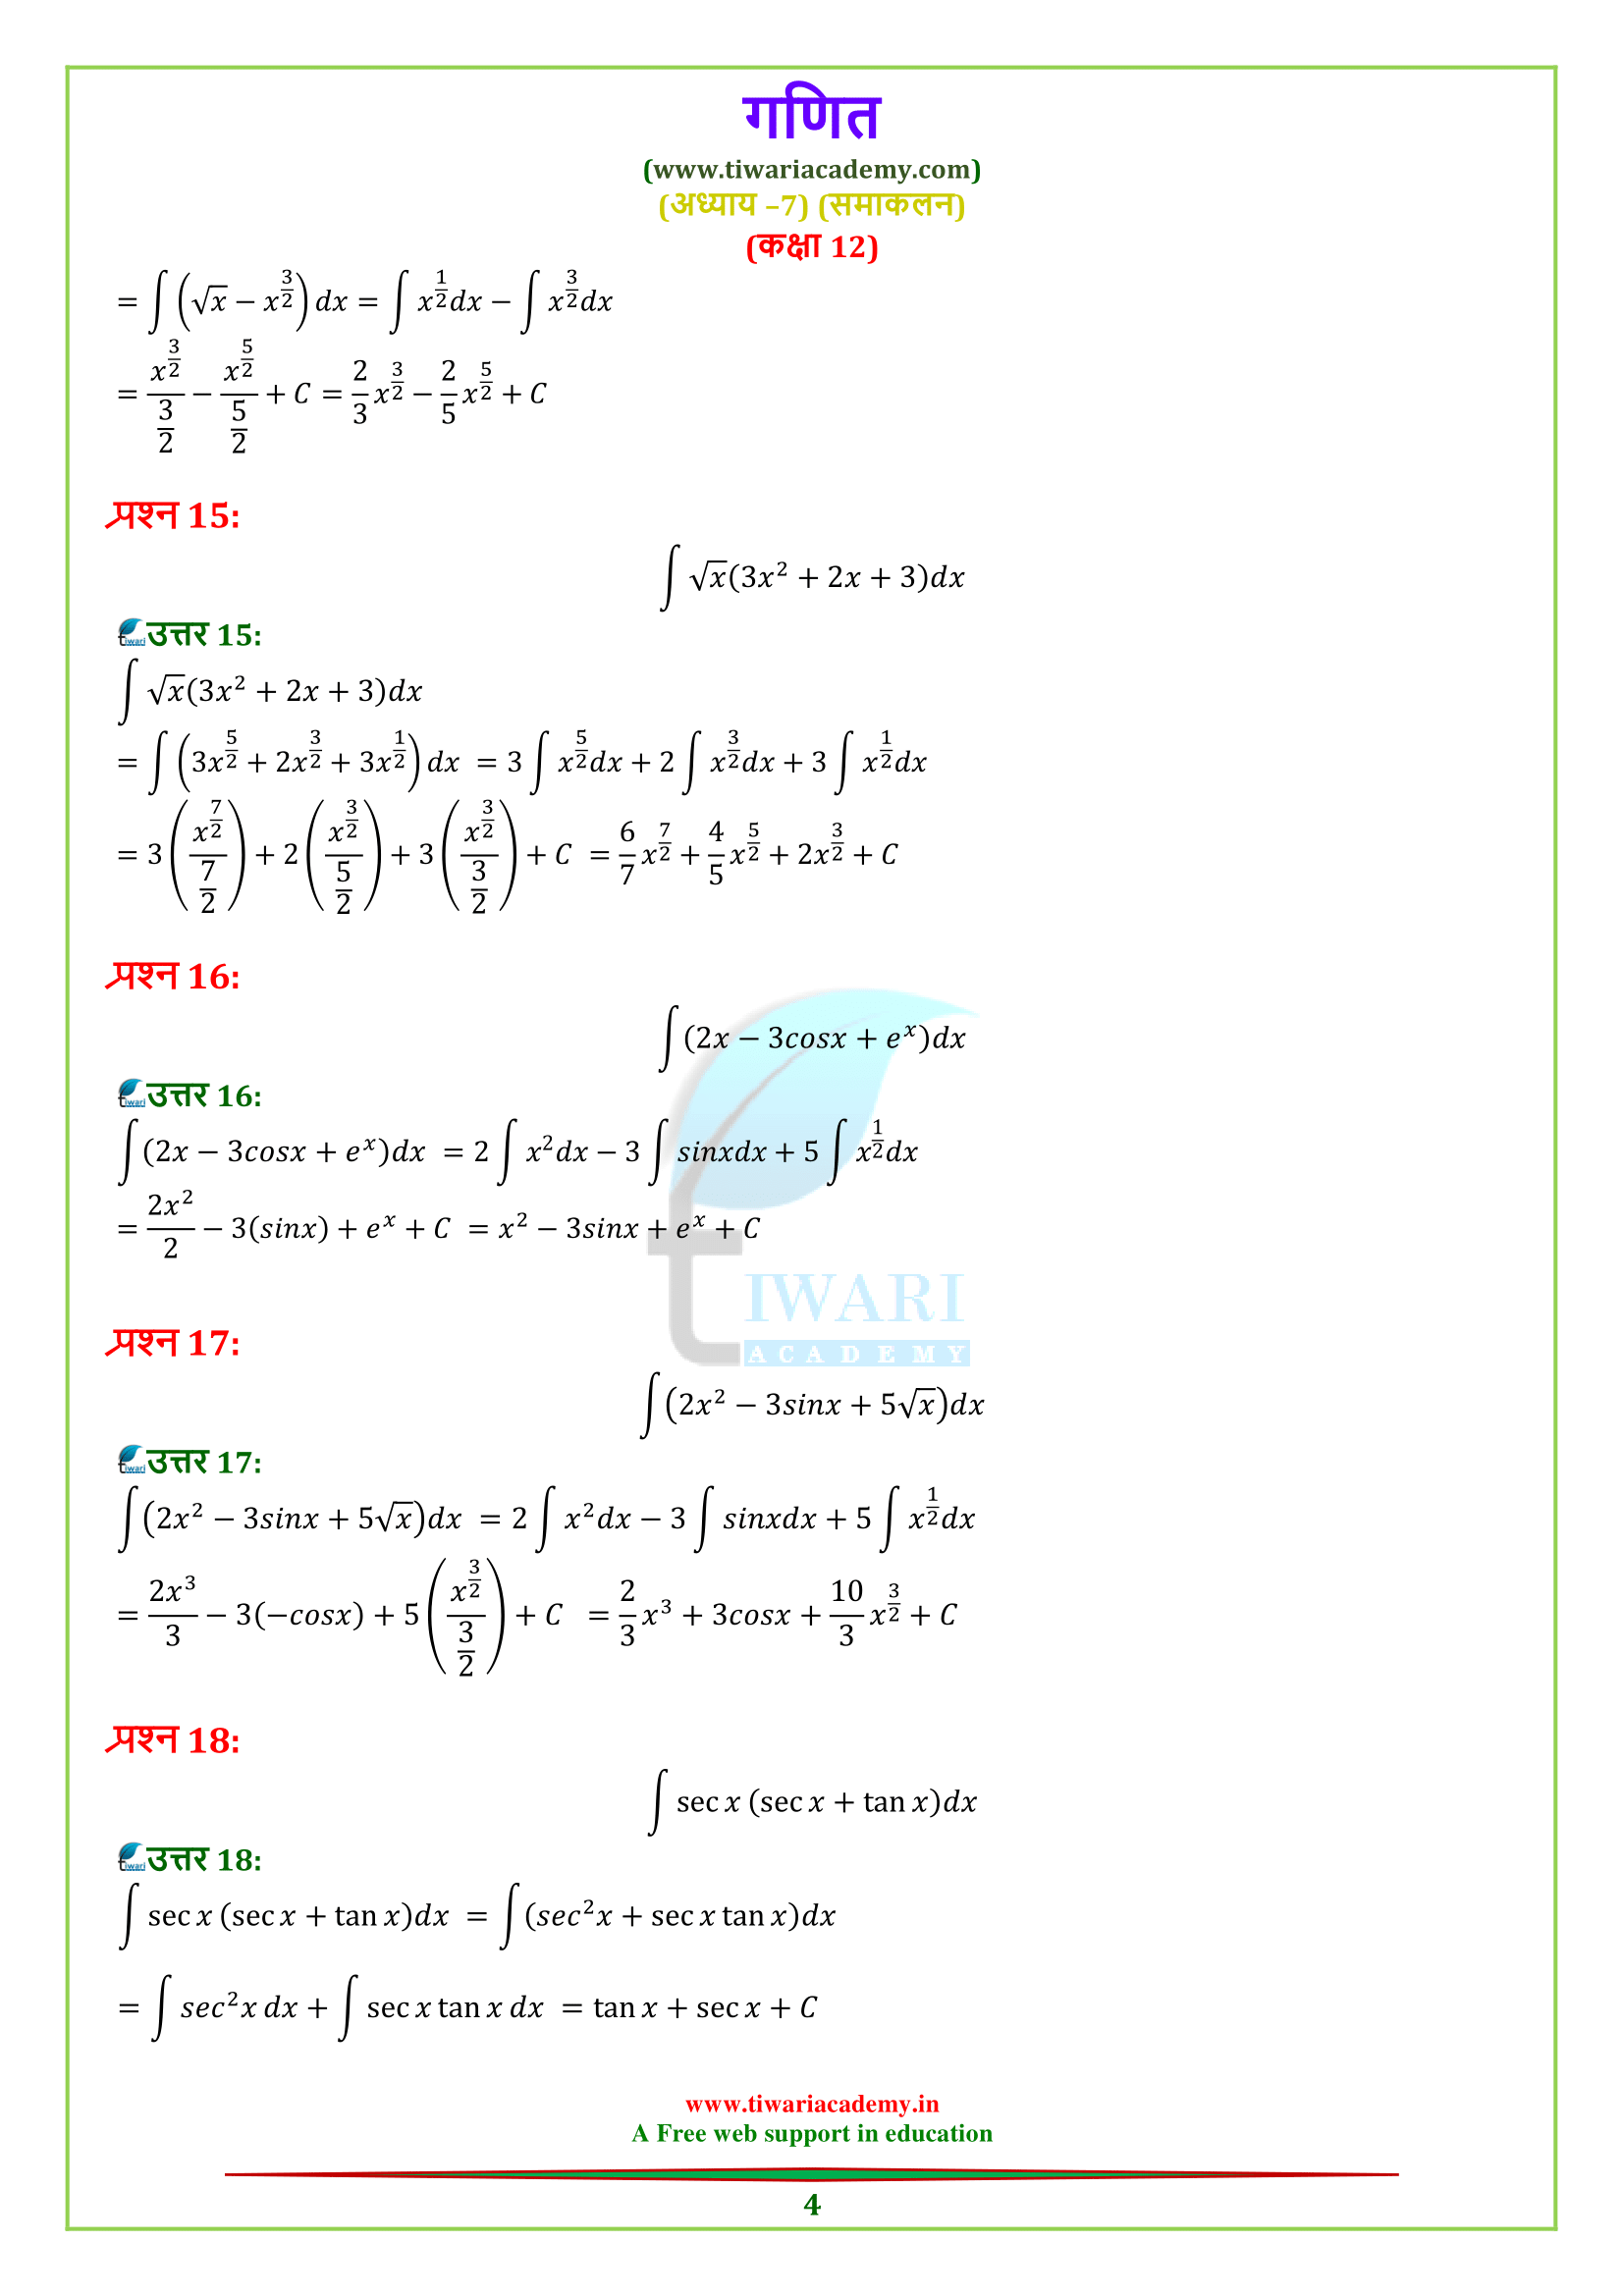 7.1 integrals